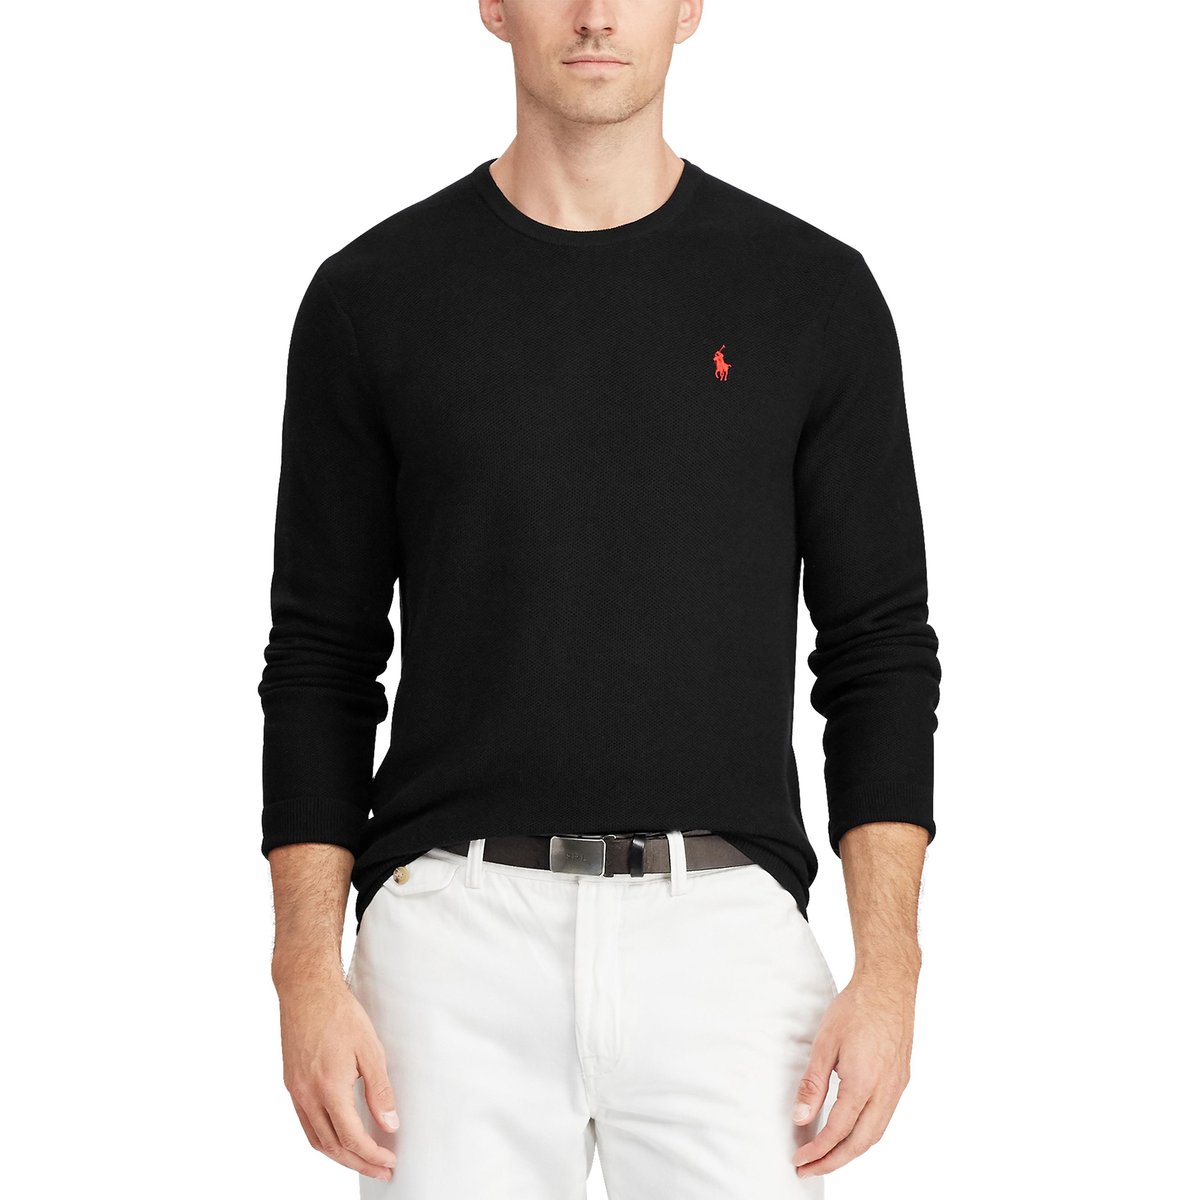 Пуловер La Redoute С круглым вырезом из хлопковой ткани Pima L черный, размер L